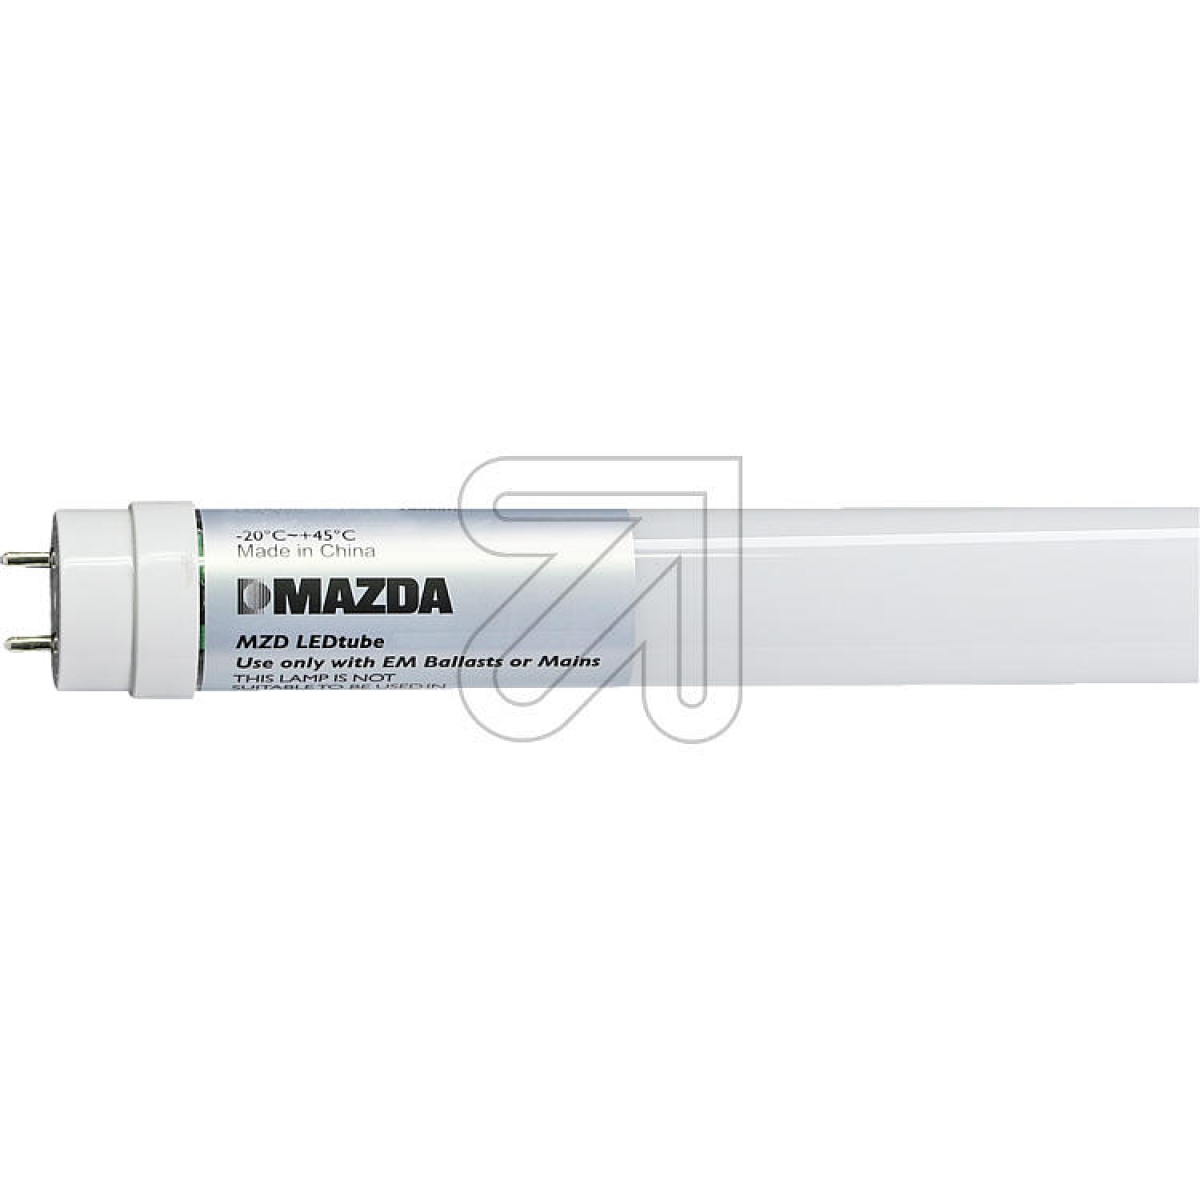 MAZDA LightingMAZDA LEDtube T8 600mm 8W 840 54328400-Preis für 20 StückArtikel-Nr: 523000